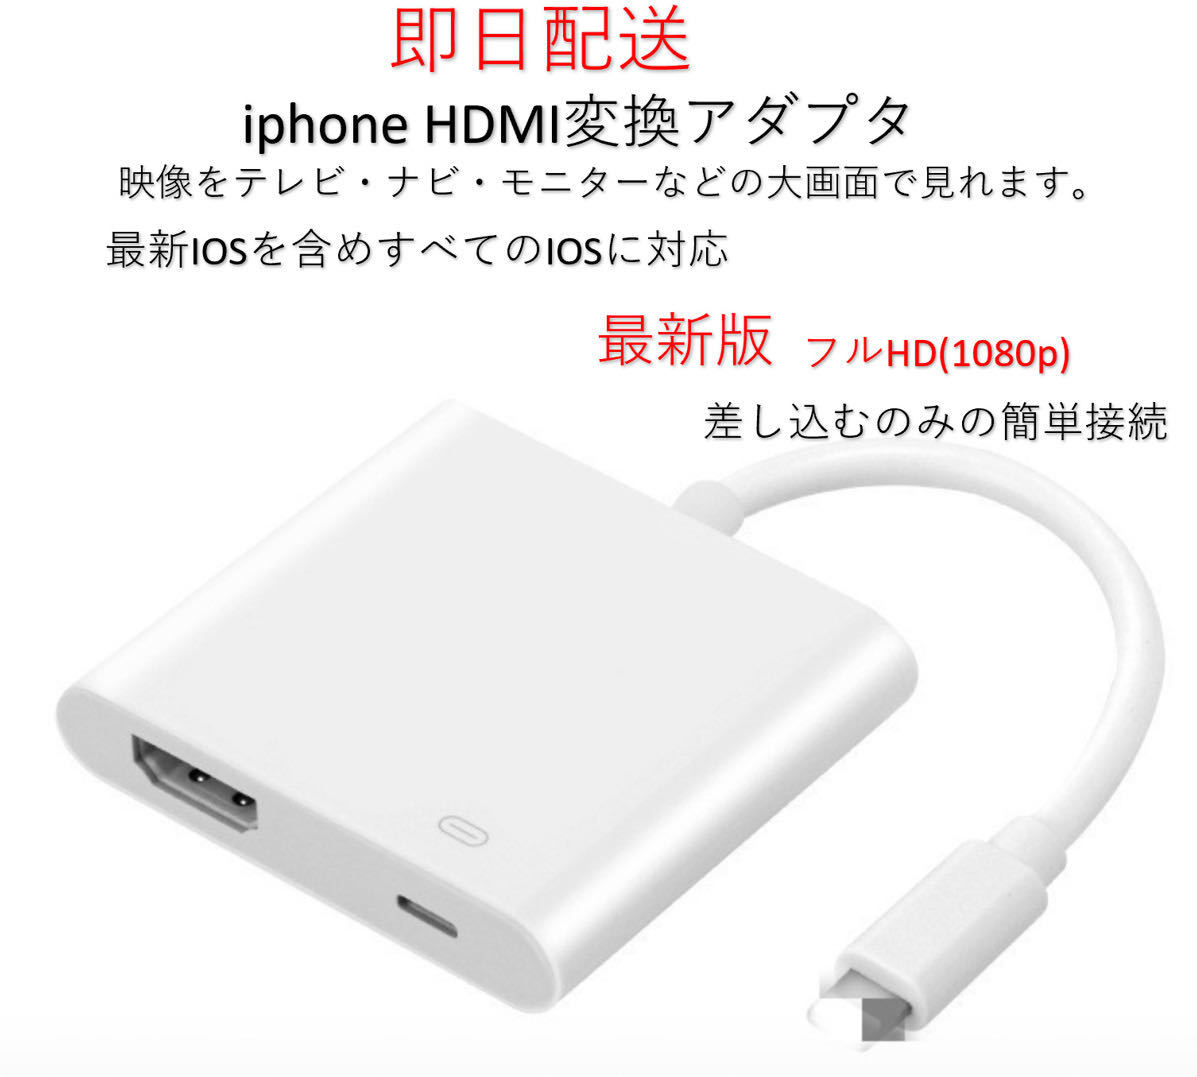 ★最新版★MFI認証 iPhone HDMI 変換アダプタ ライトニング 接続ケーブル アダプタ HDMIケーブル 有線ミラーリング 設定不要(元箱なし)_画像1